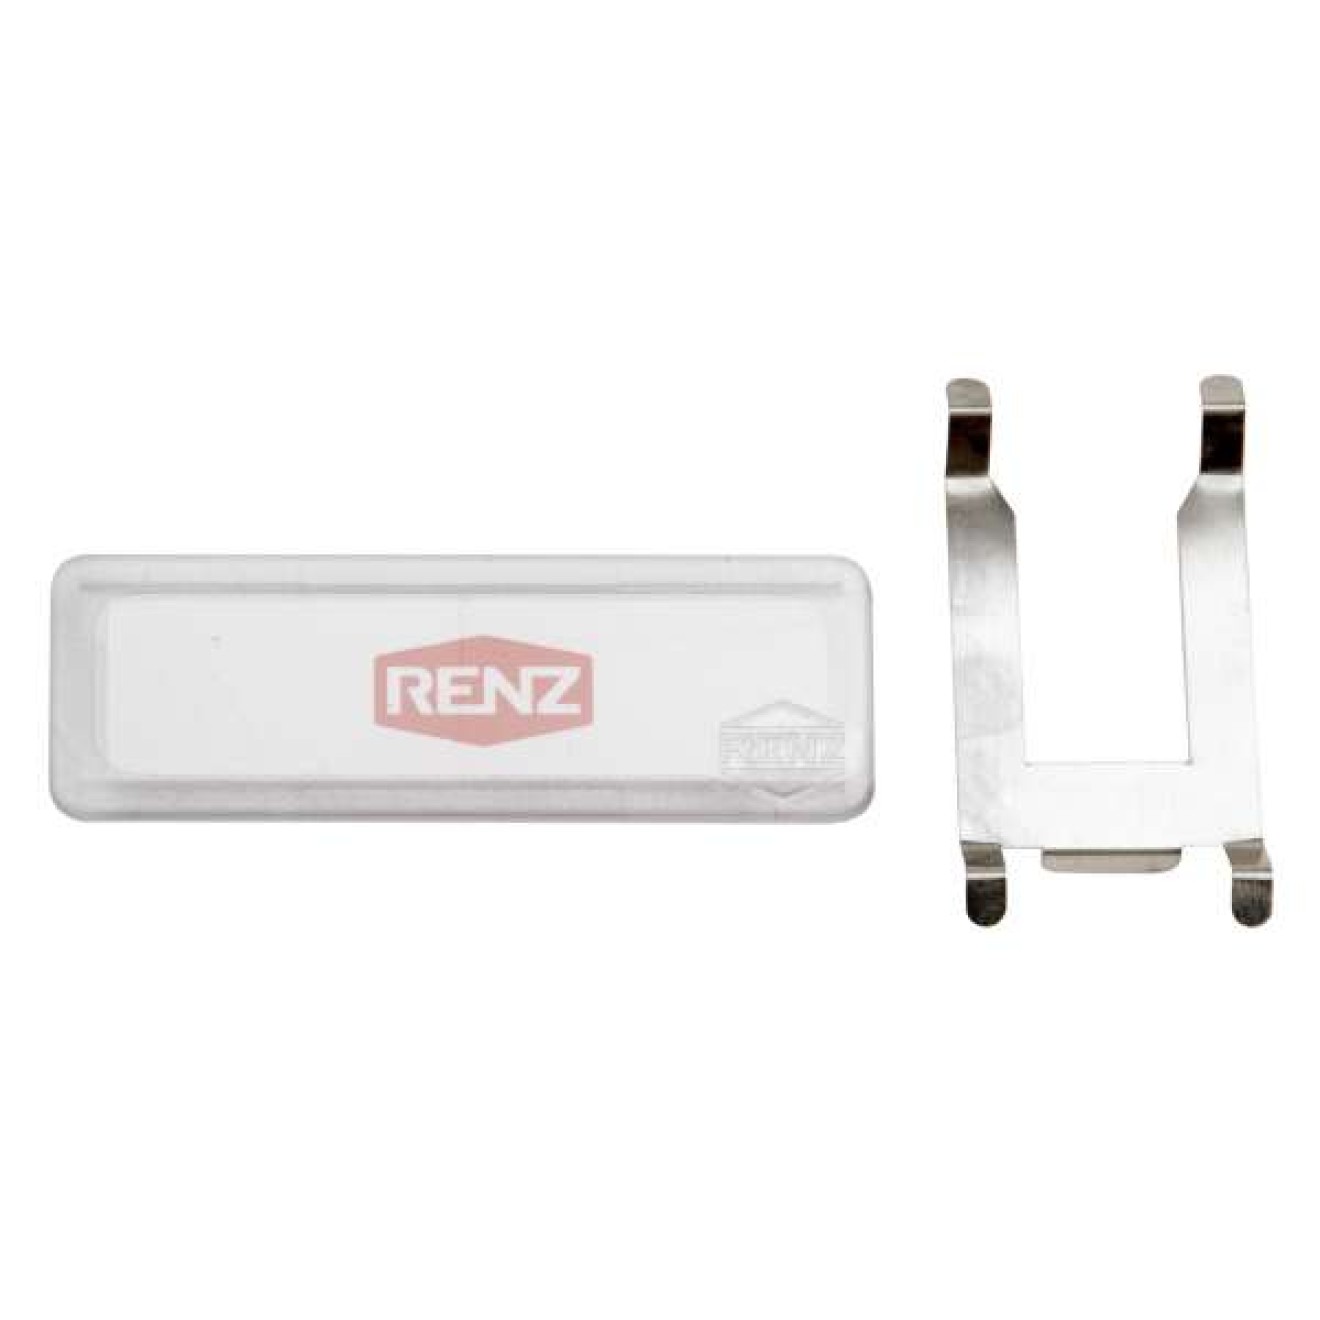 RENZ Beleuchtungskasten für Namensschildhalterung RSA1 mit Soffitte, 97-9-85149